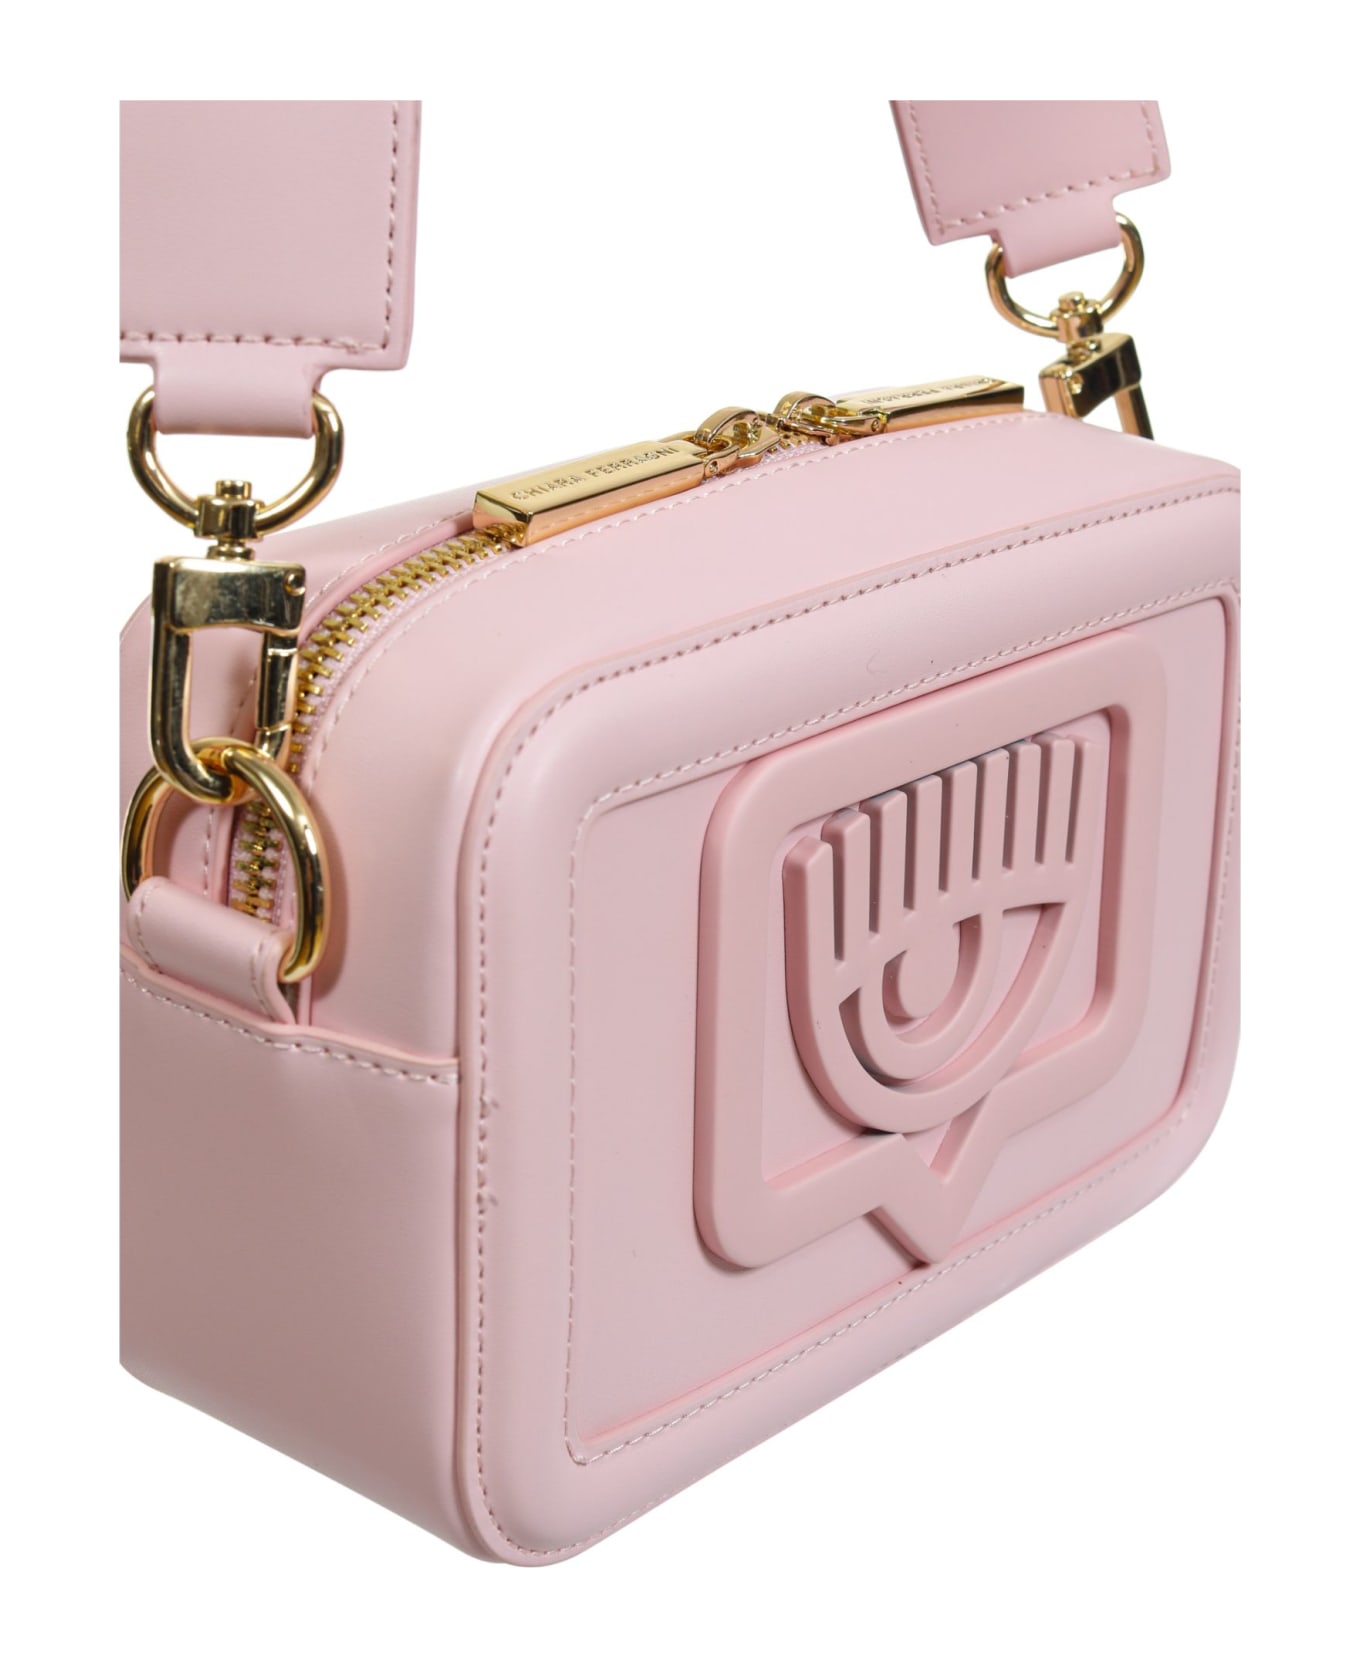 Chiara Ferragni Bag - Pink ショルダーバッグ